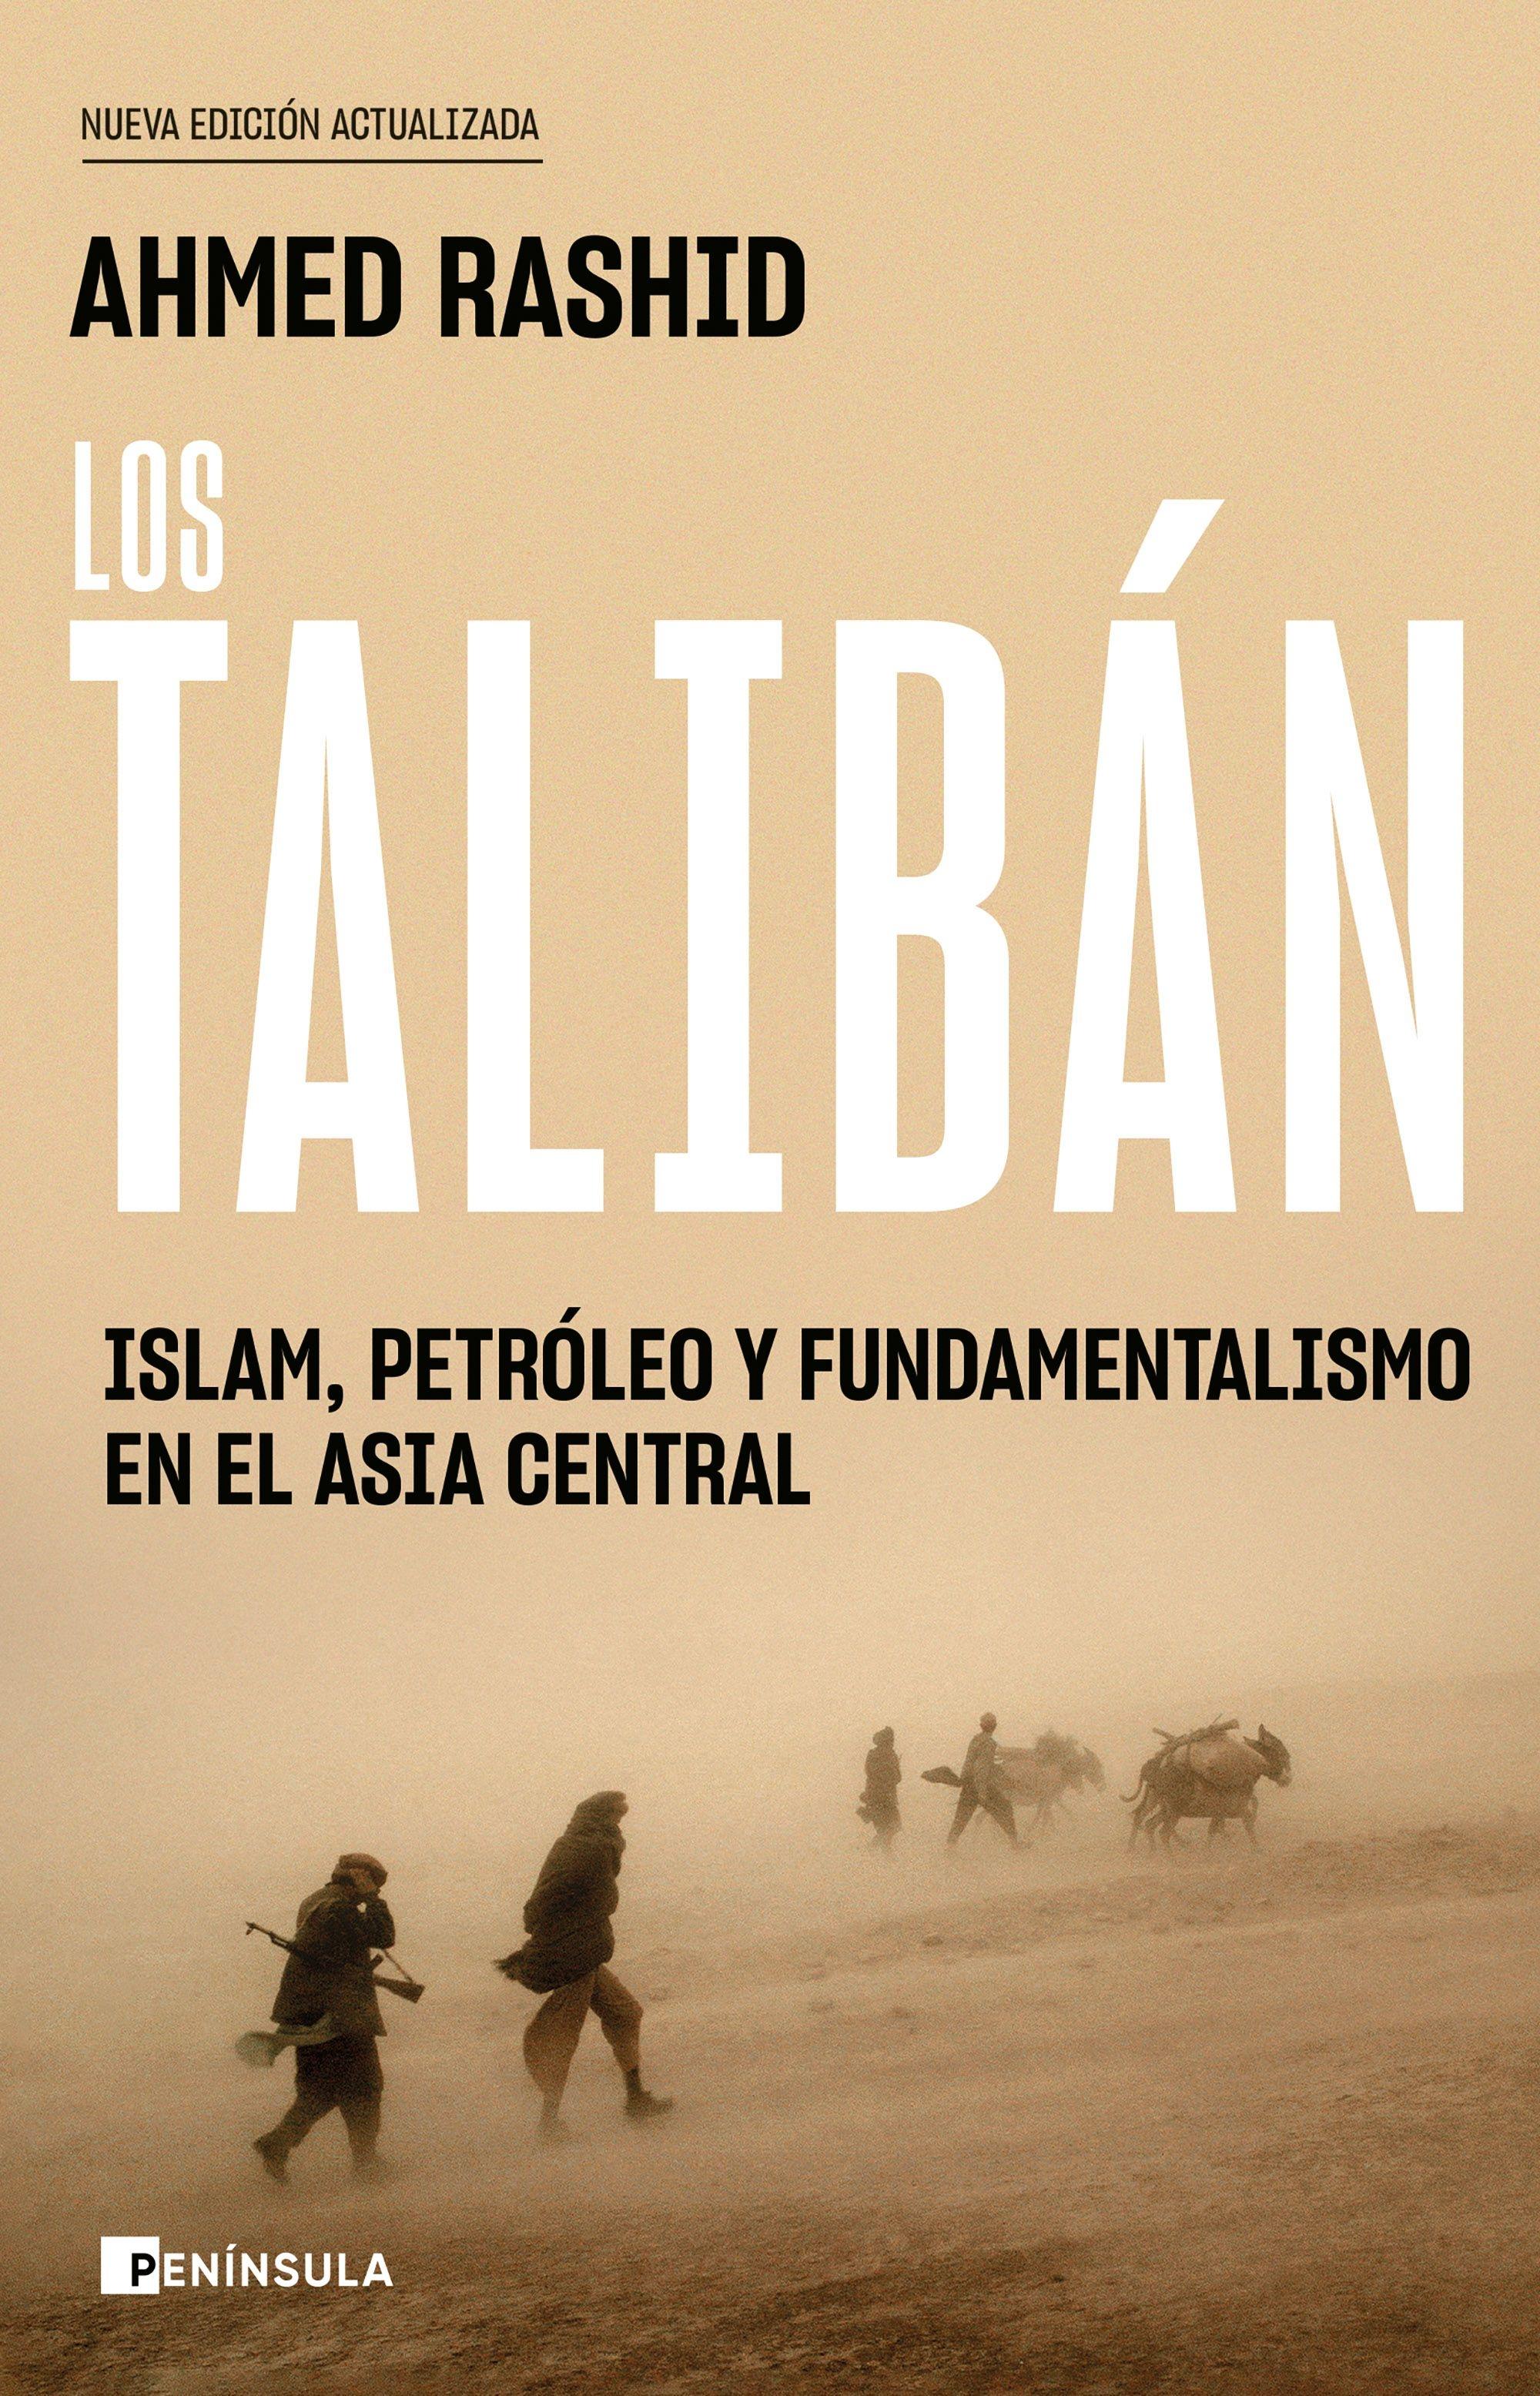 Los Taliban "Islam, Petroleo y Fundamentalismo en el Asia Central"